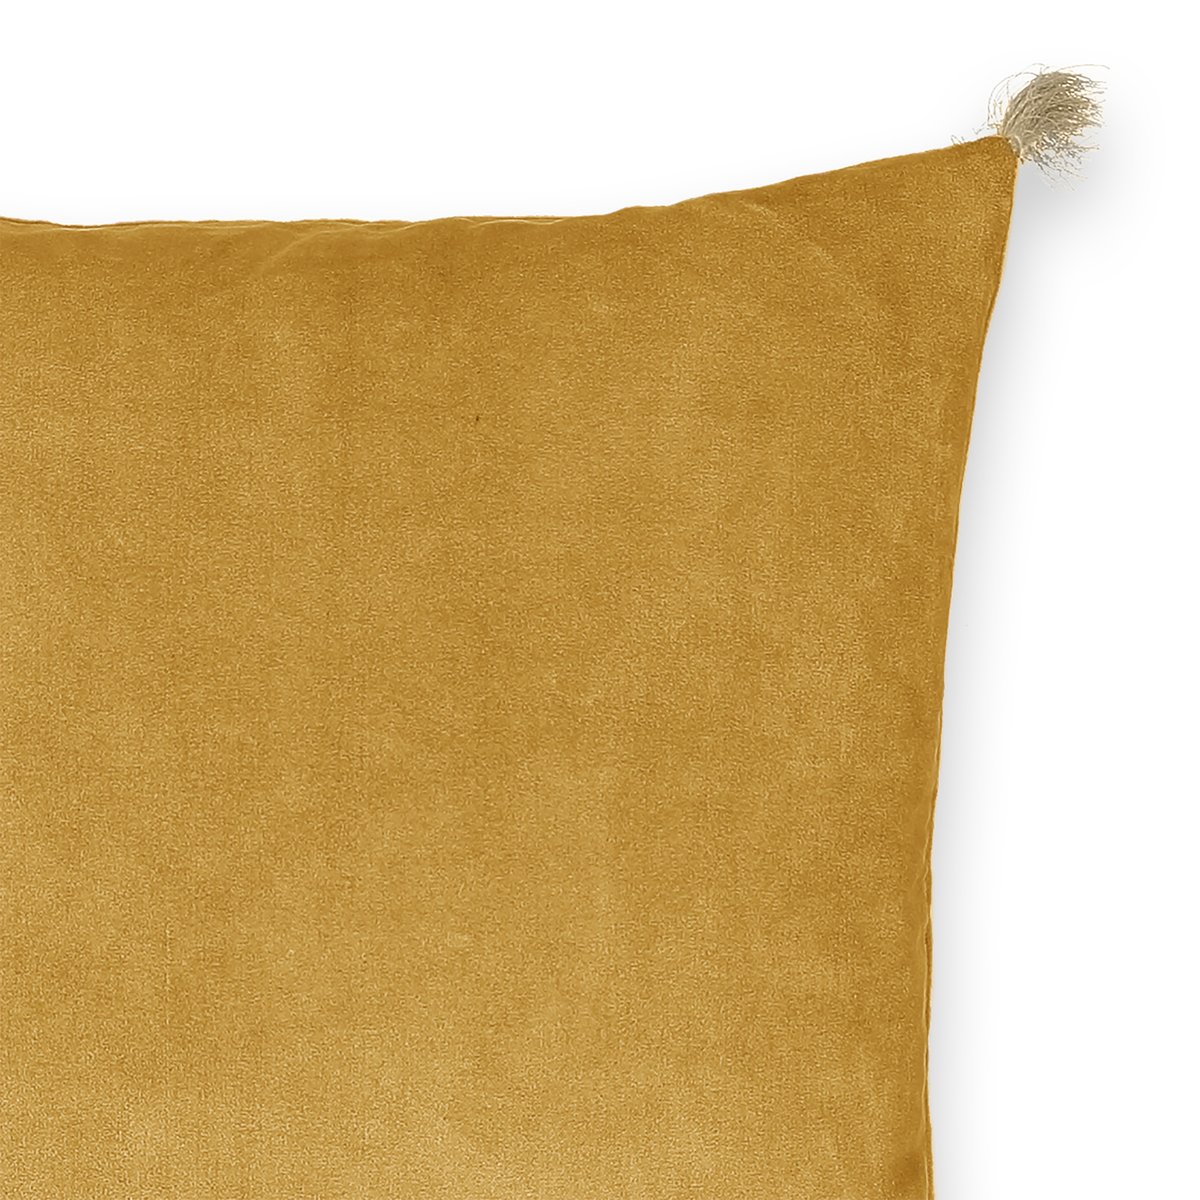 Чехол LaRedoute На подушку велюровый Cacolet 50 x 30 см желтый, размер 50 x 30 см - фото 4